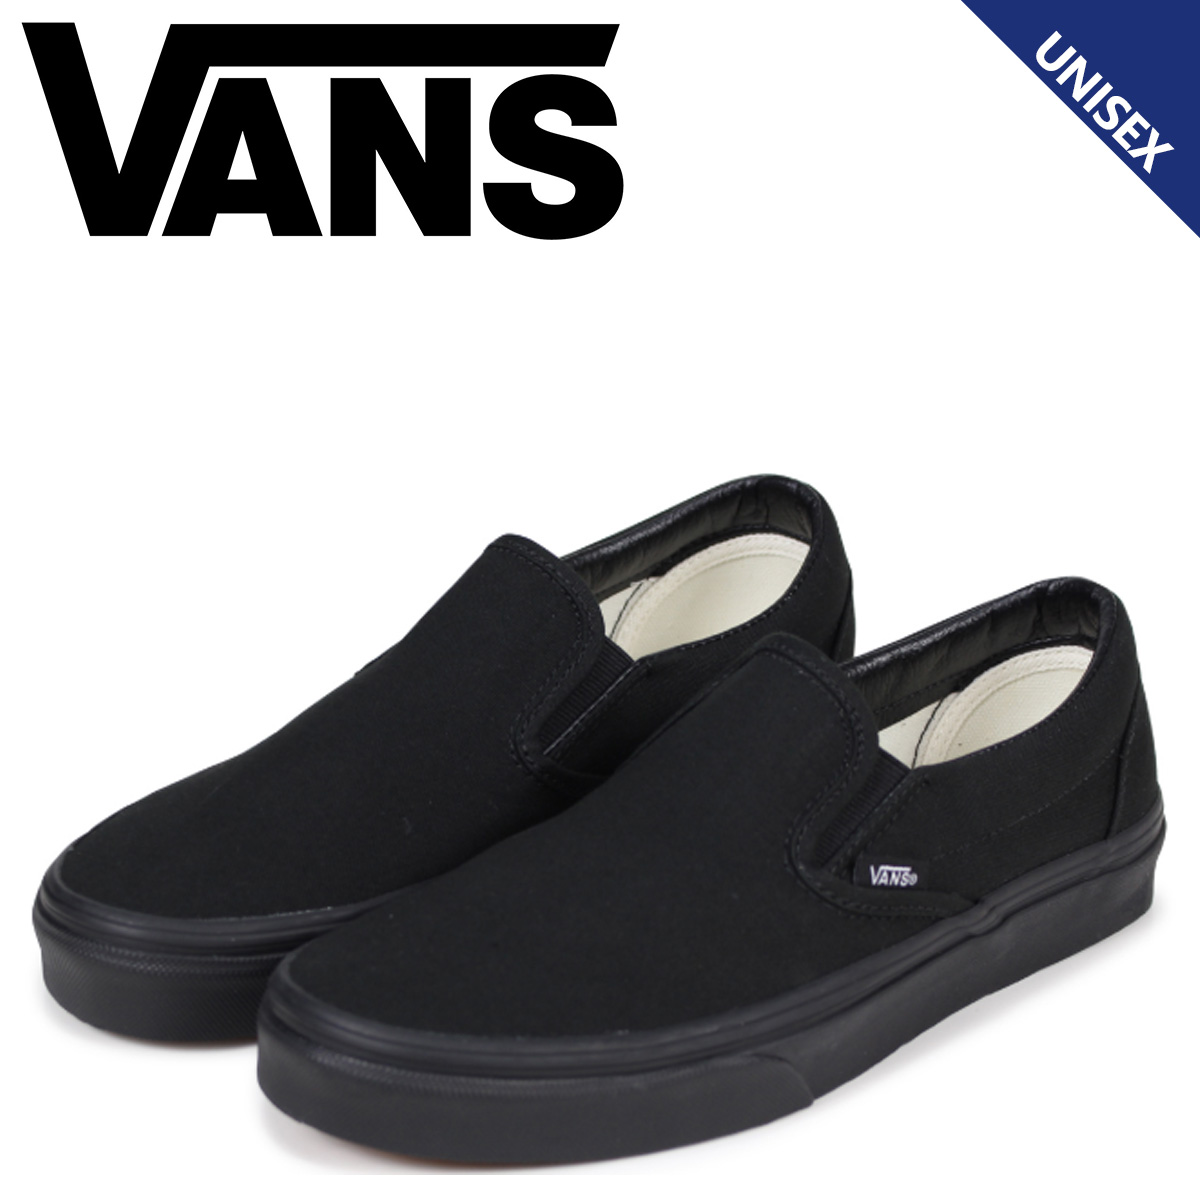 vans classic slip on black black